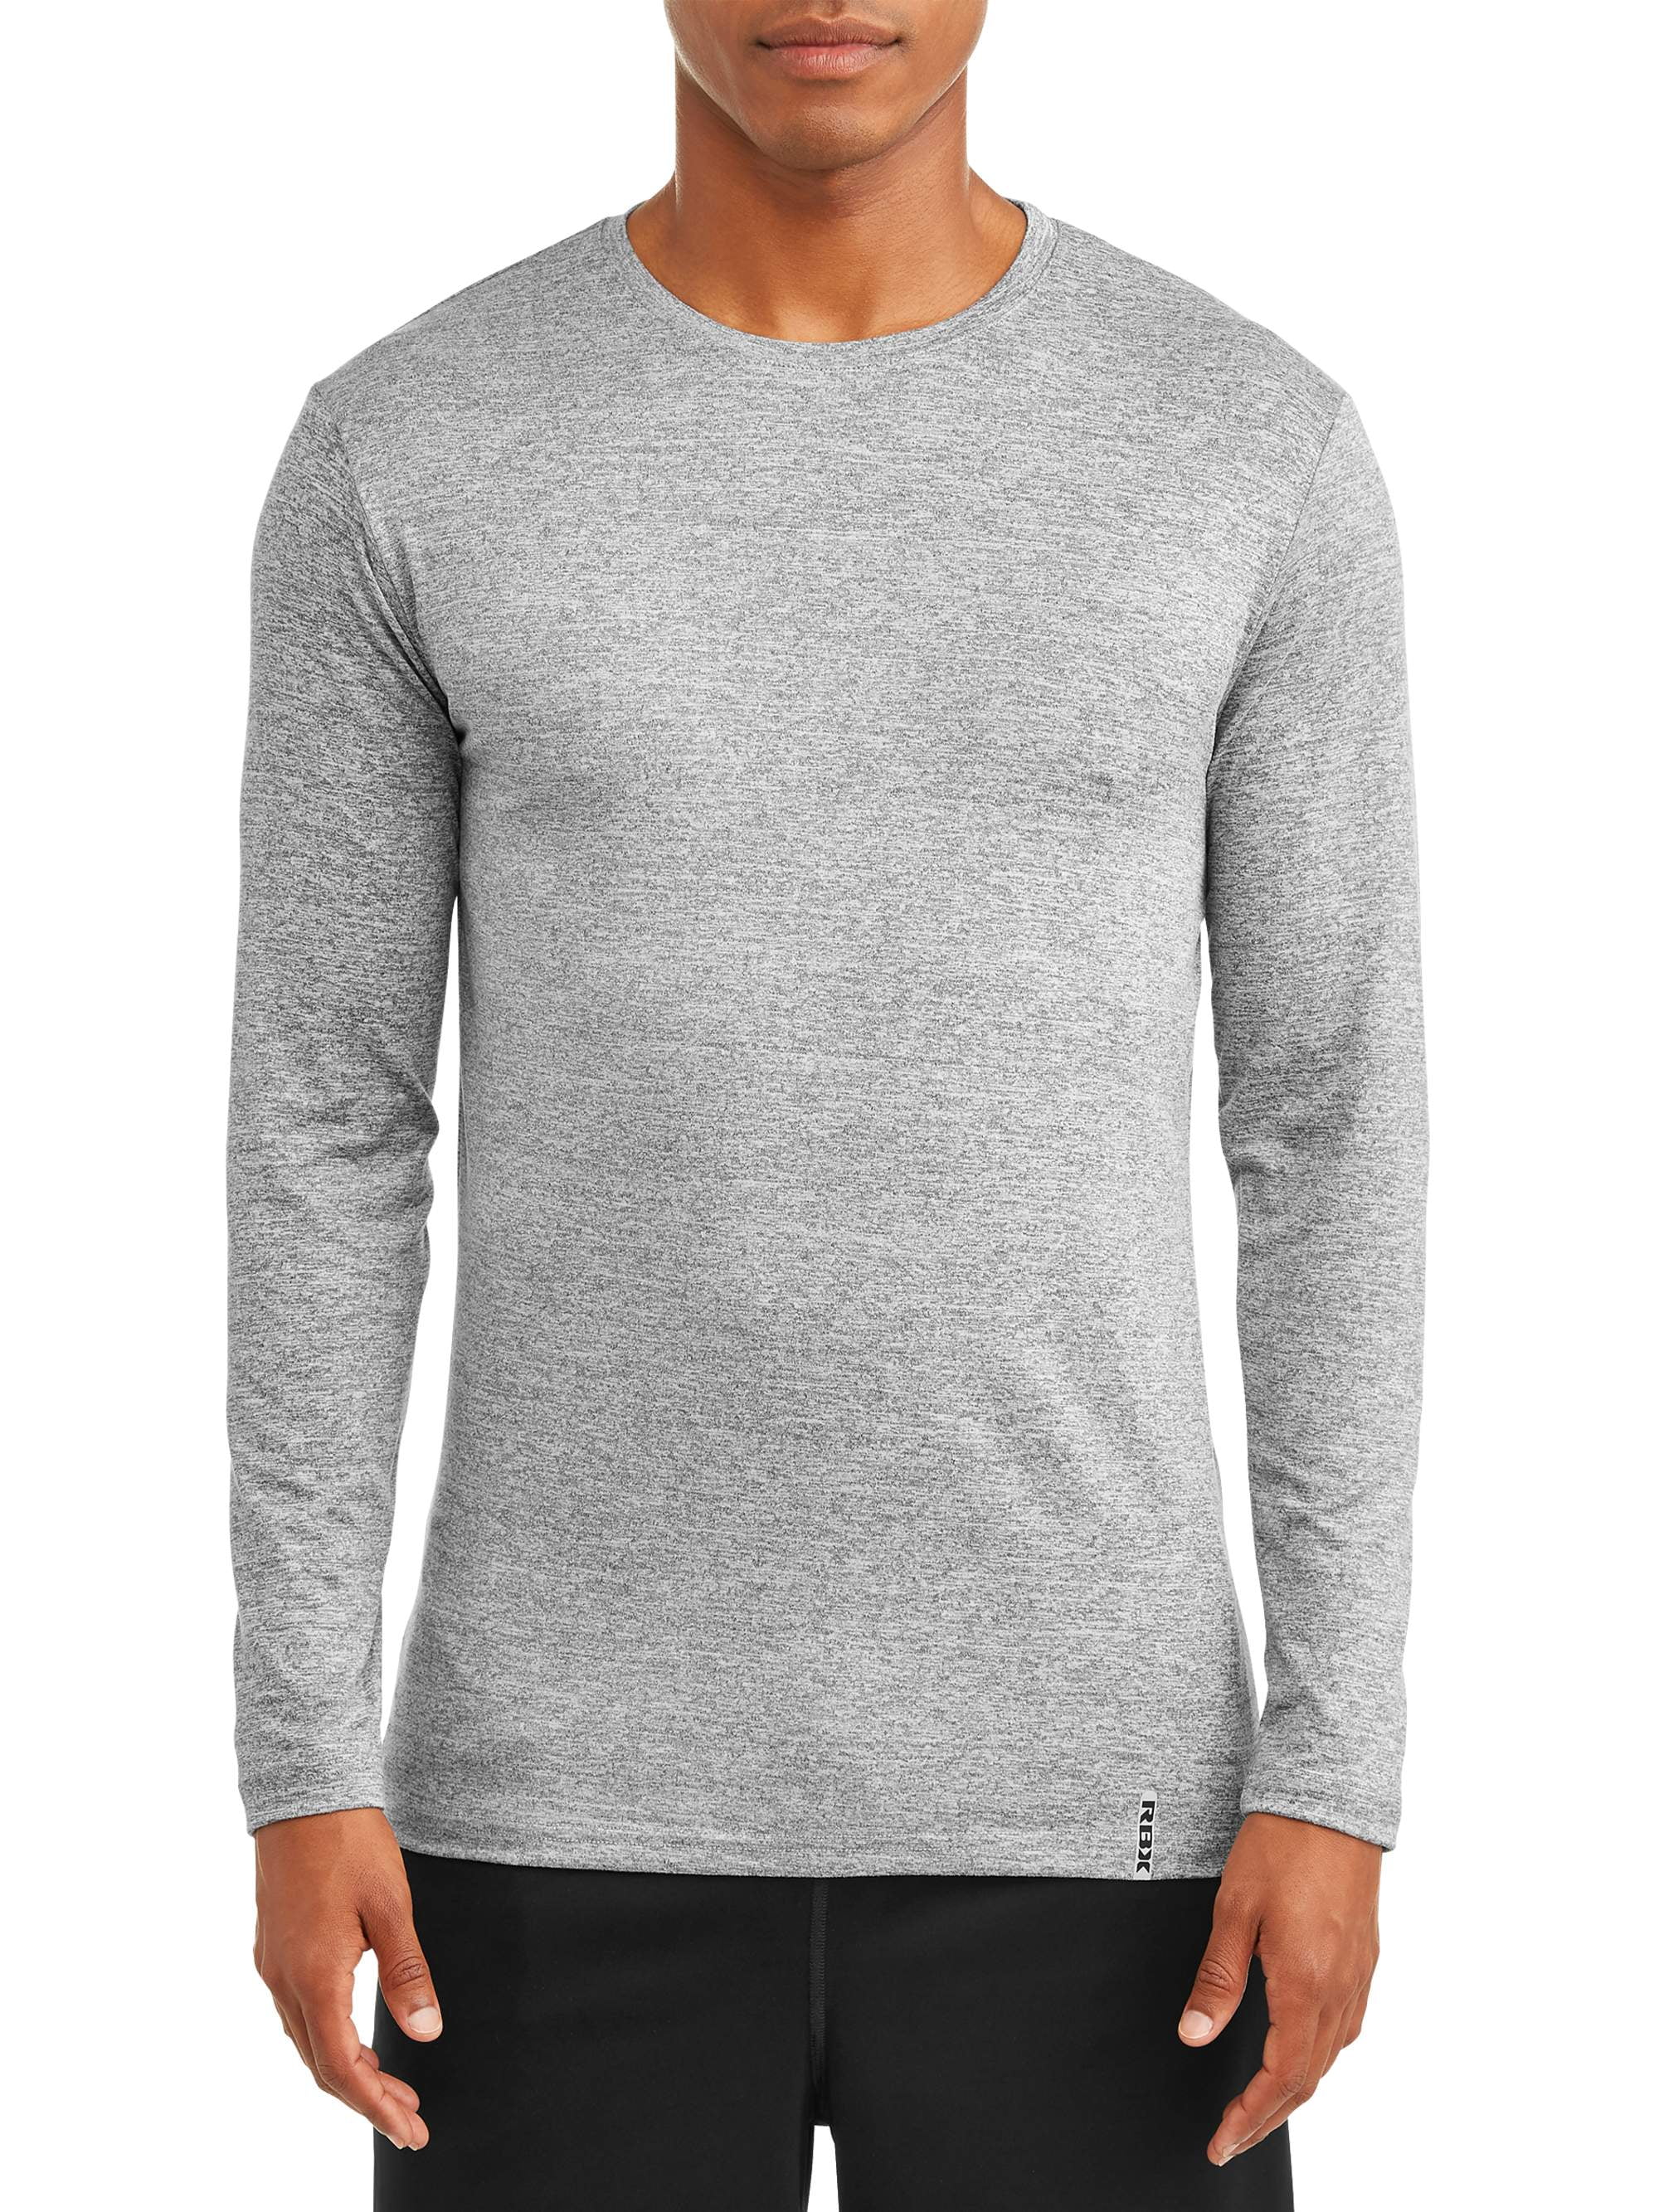 RBX Men's Ultra Soft Long-Sleeve Crew Neck T-Shirt - Walmart.com